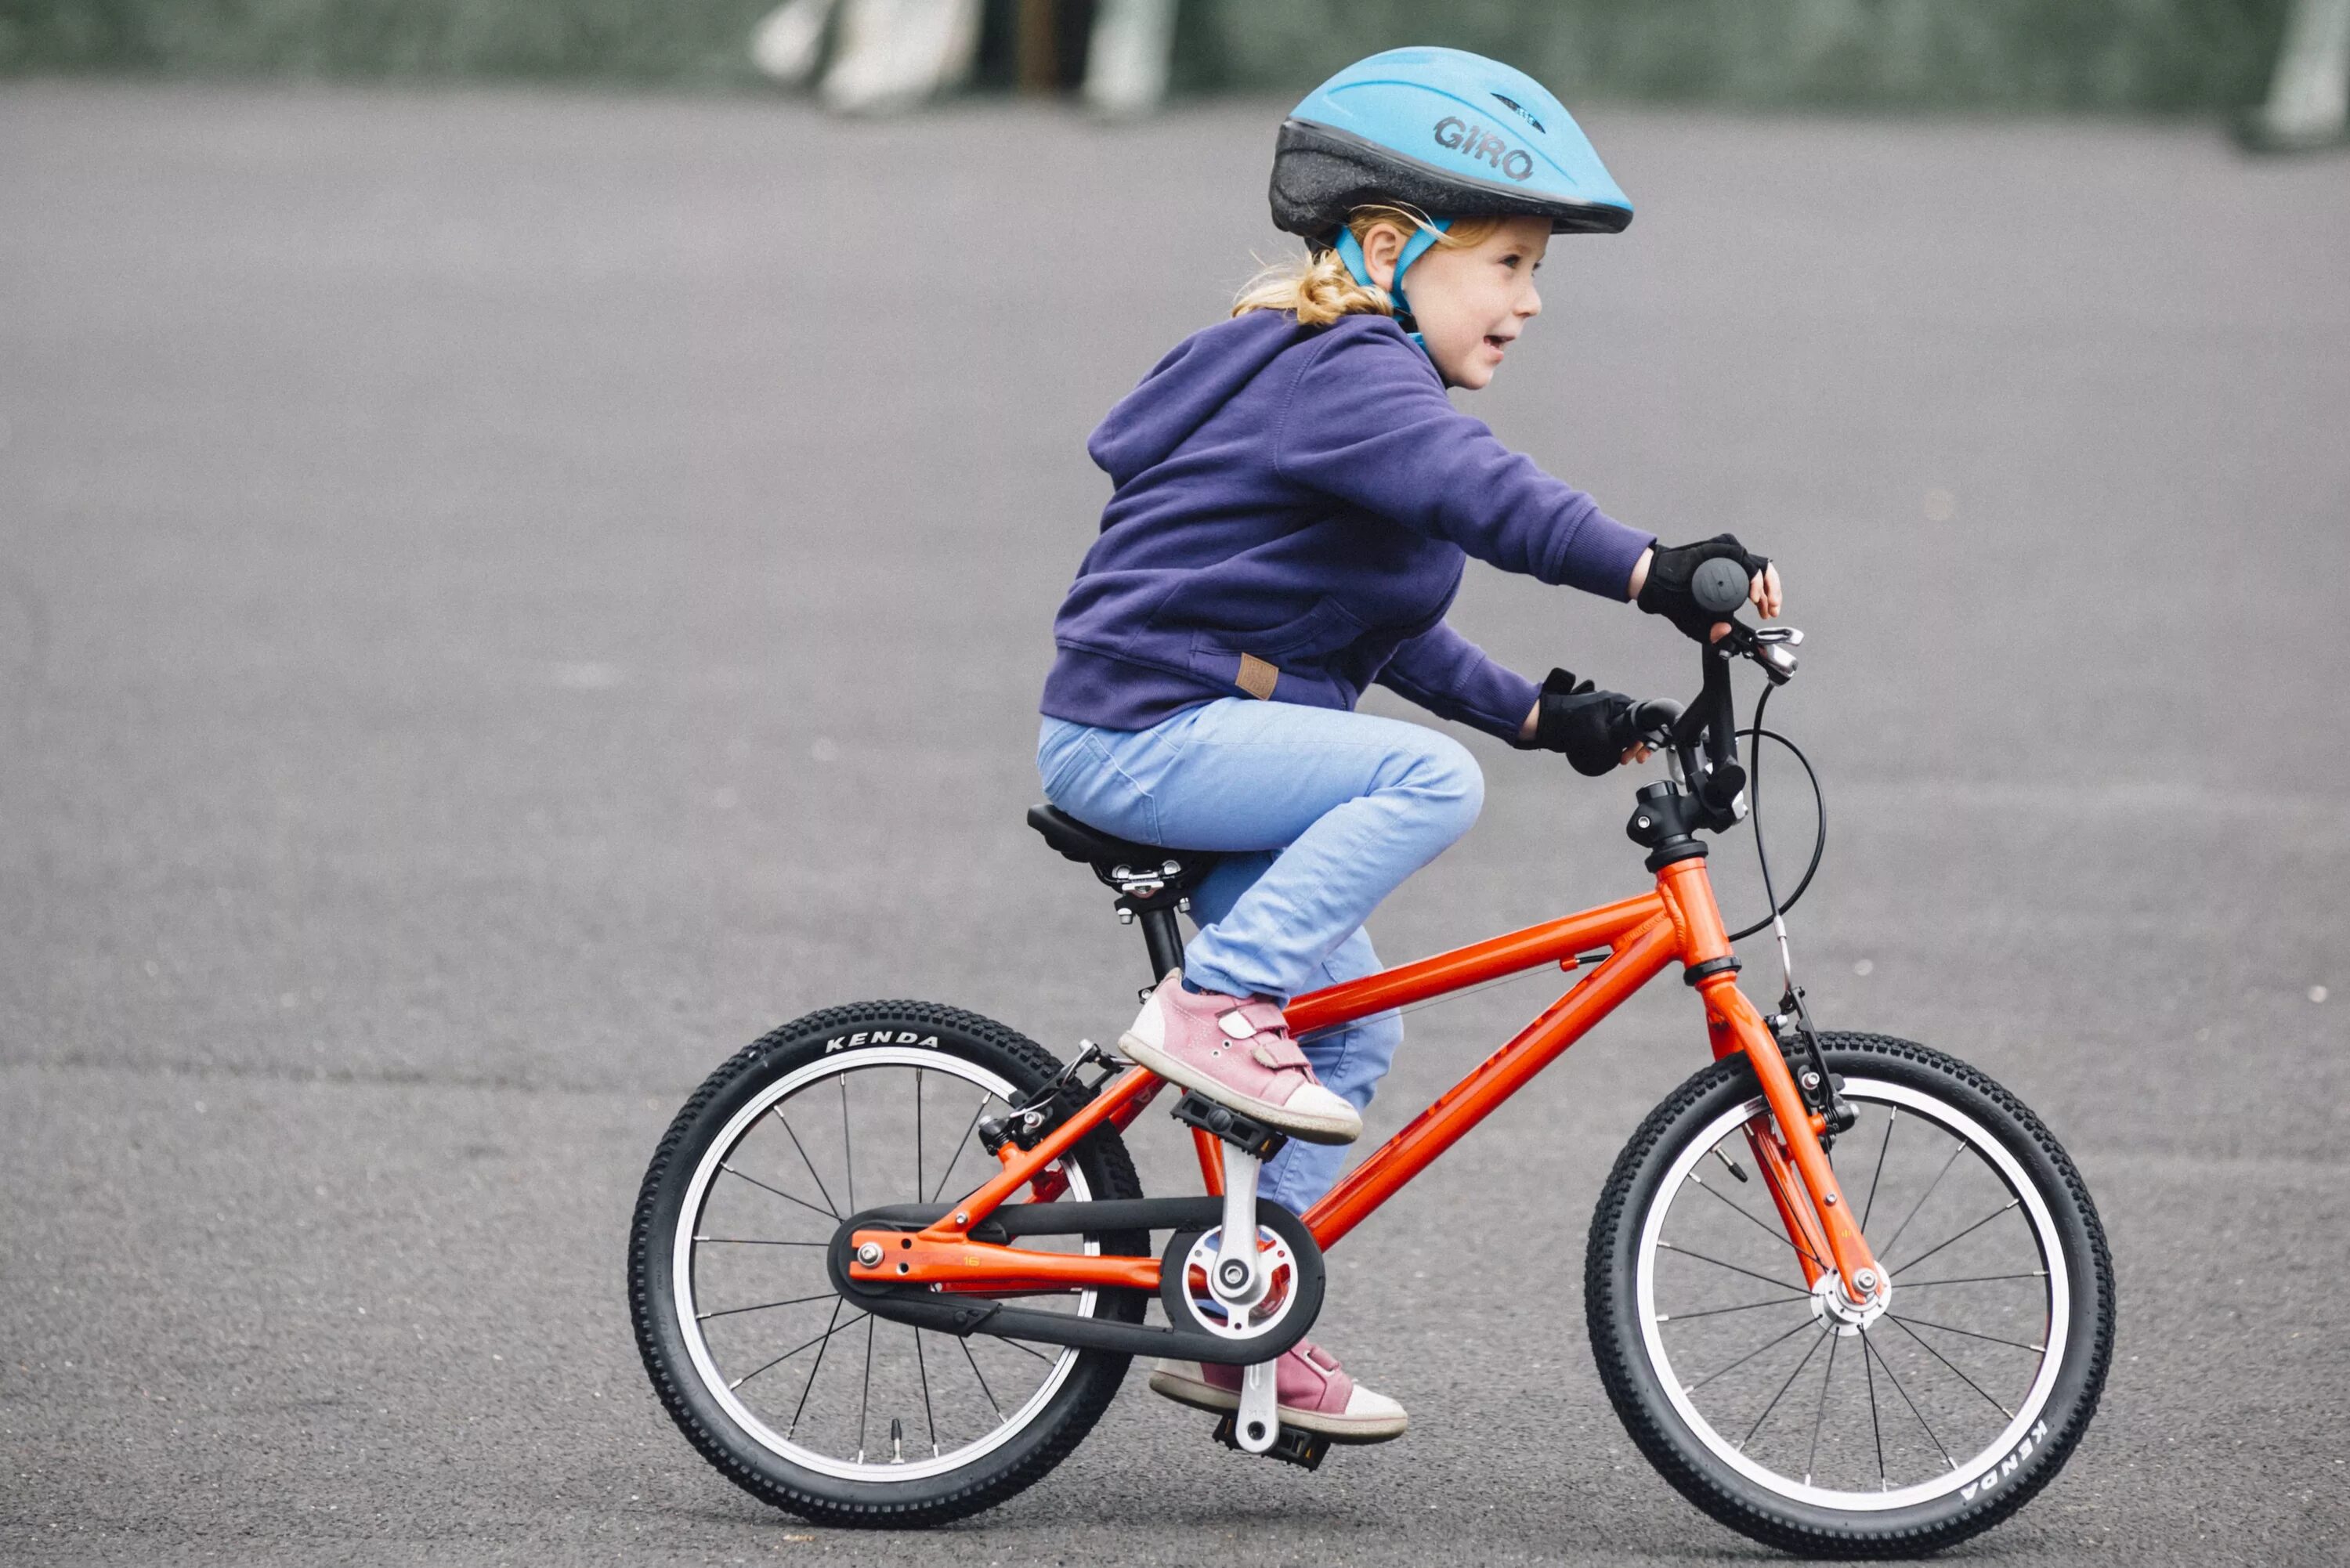 The children ride bikes. Мальчик на велосипеде. Дети с велосипедом. Велосипеды детские. Велосипед для дошкольников.